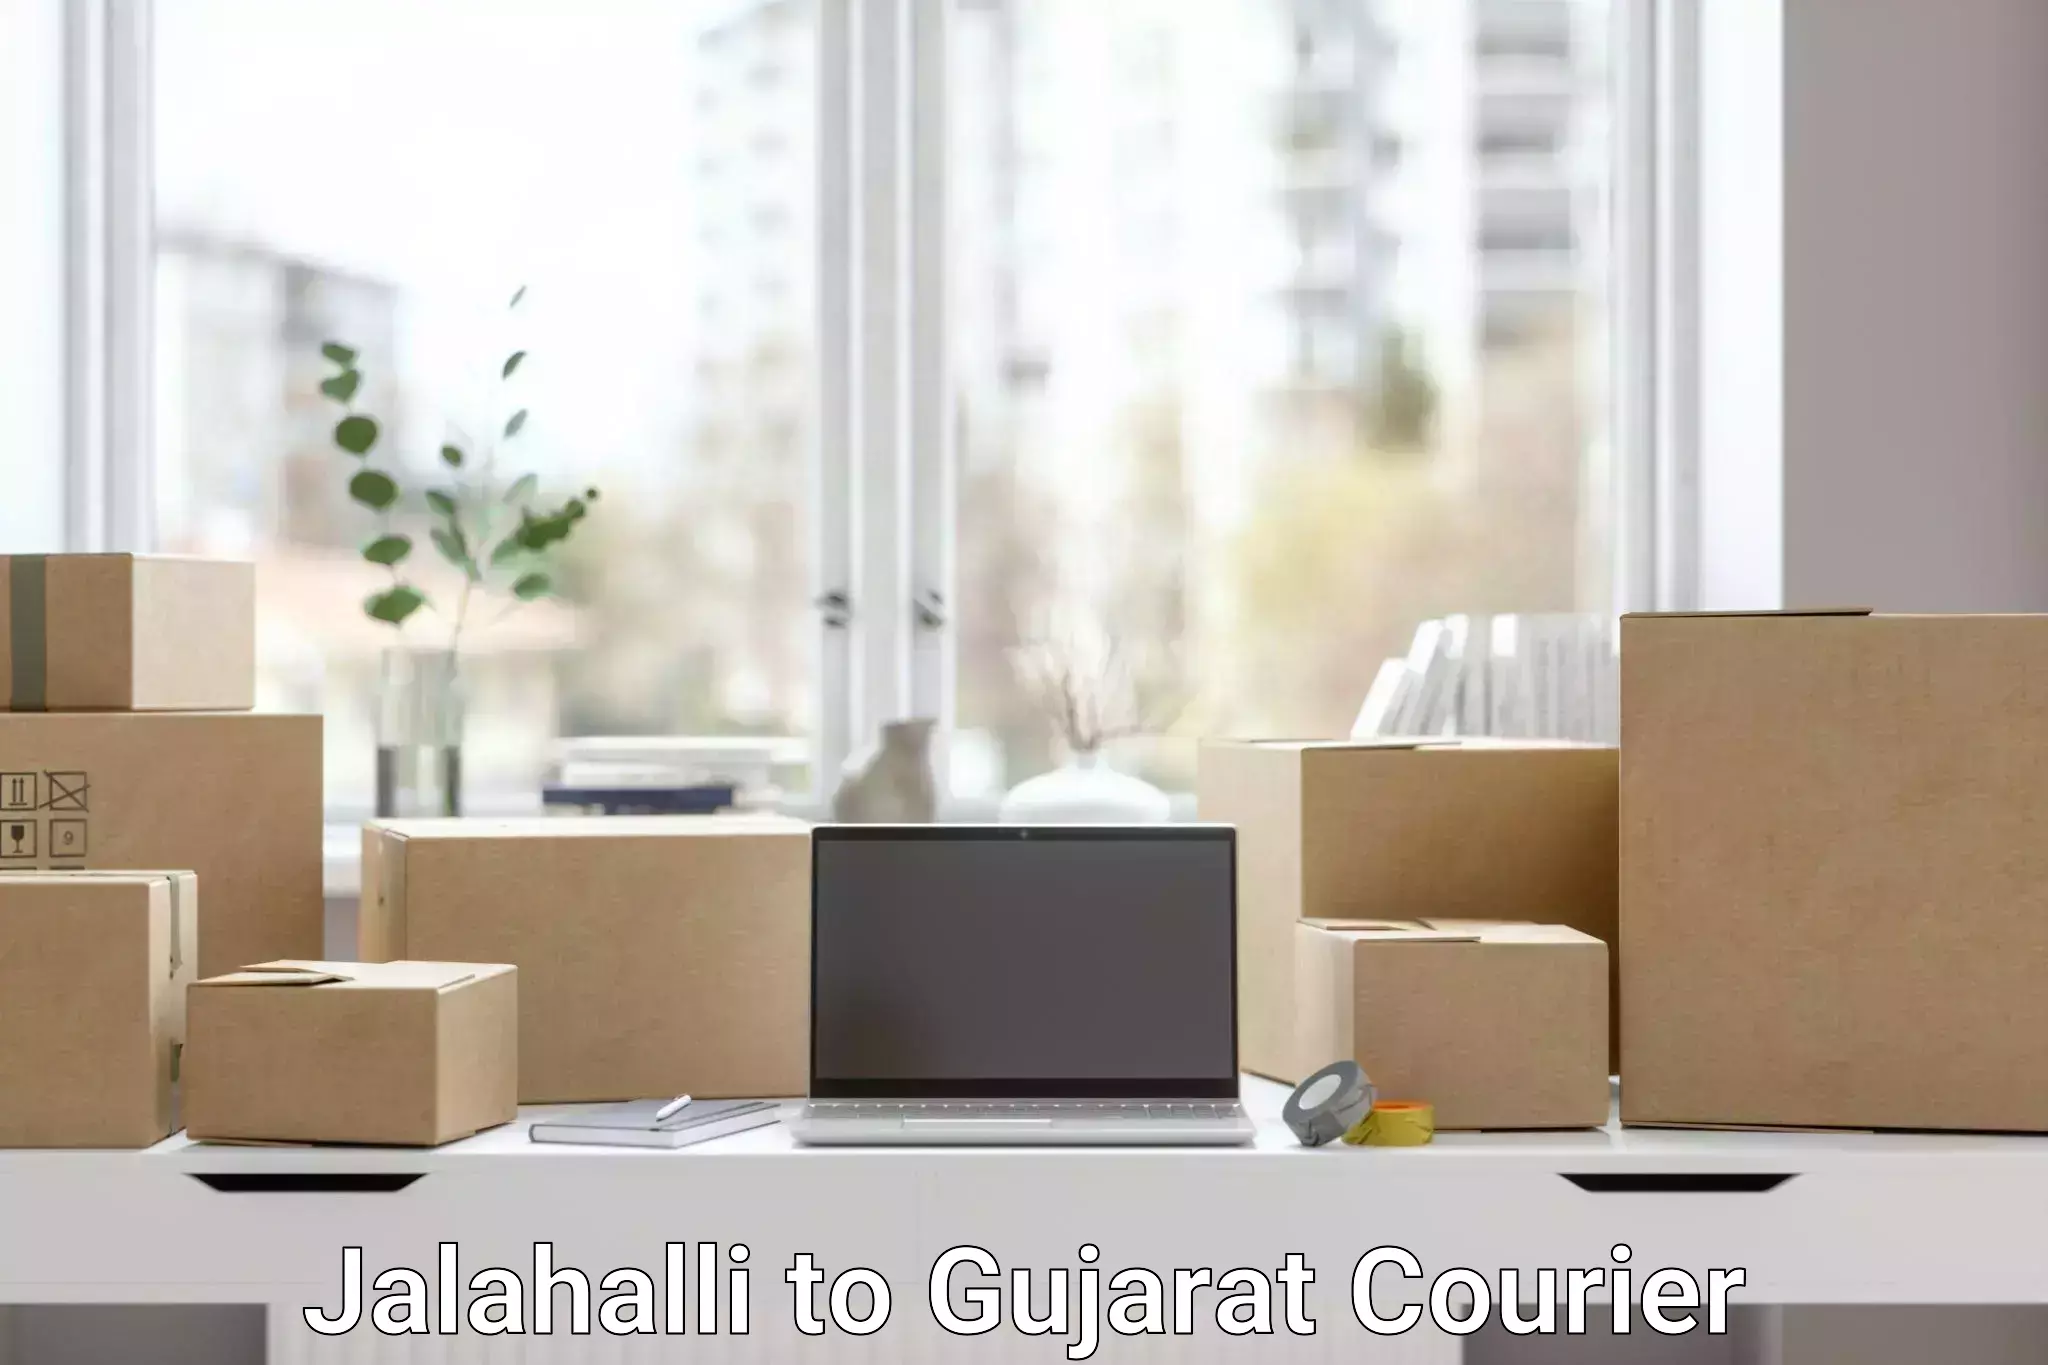 Global shipping solutions Jalahalli to Anand